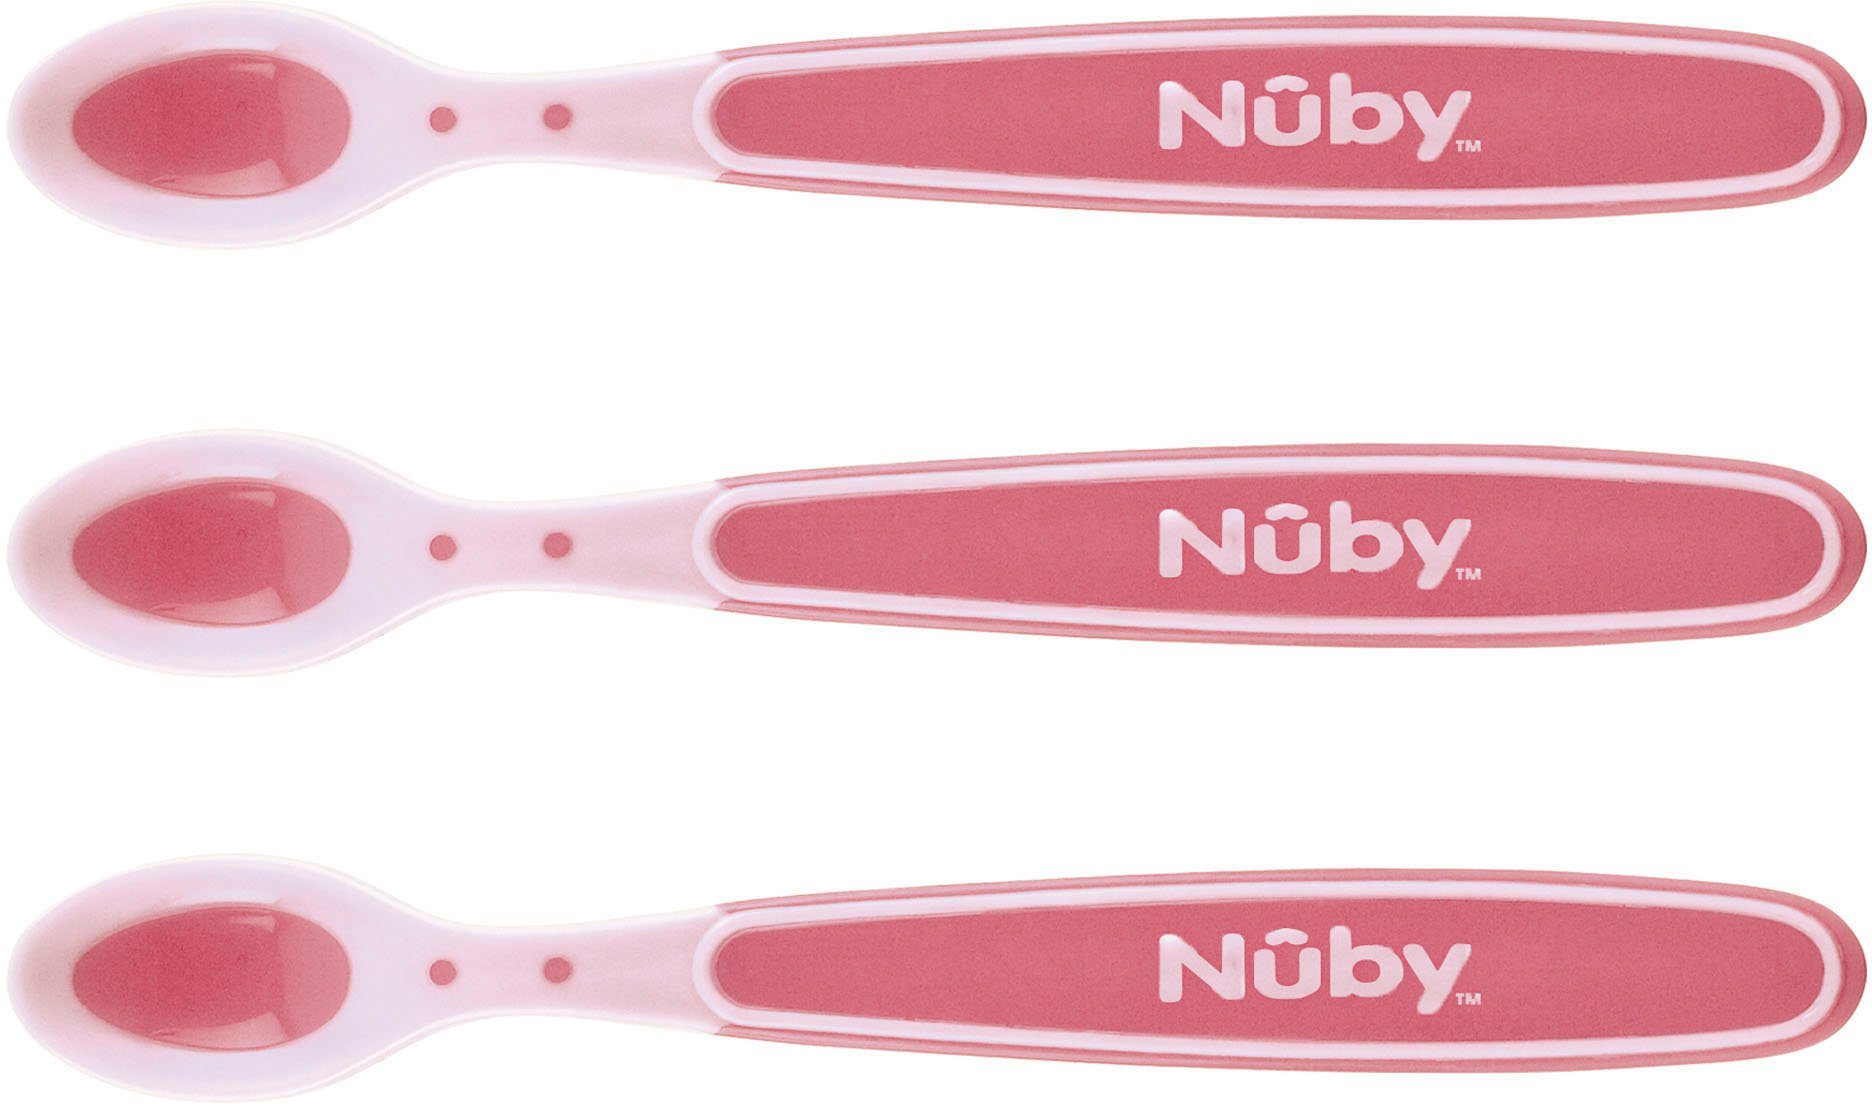 Nuby Kinderlöffel Breilöffel Soft Flex, 3er Set, pink (3 Stück), mit Wärmesensor